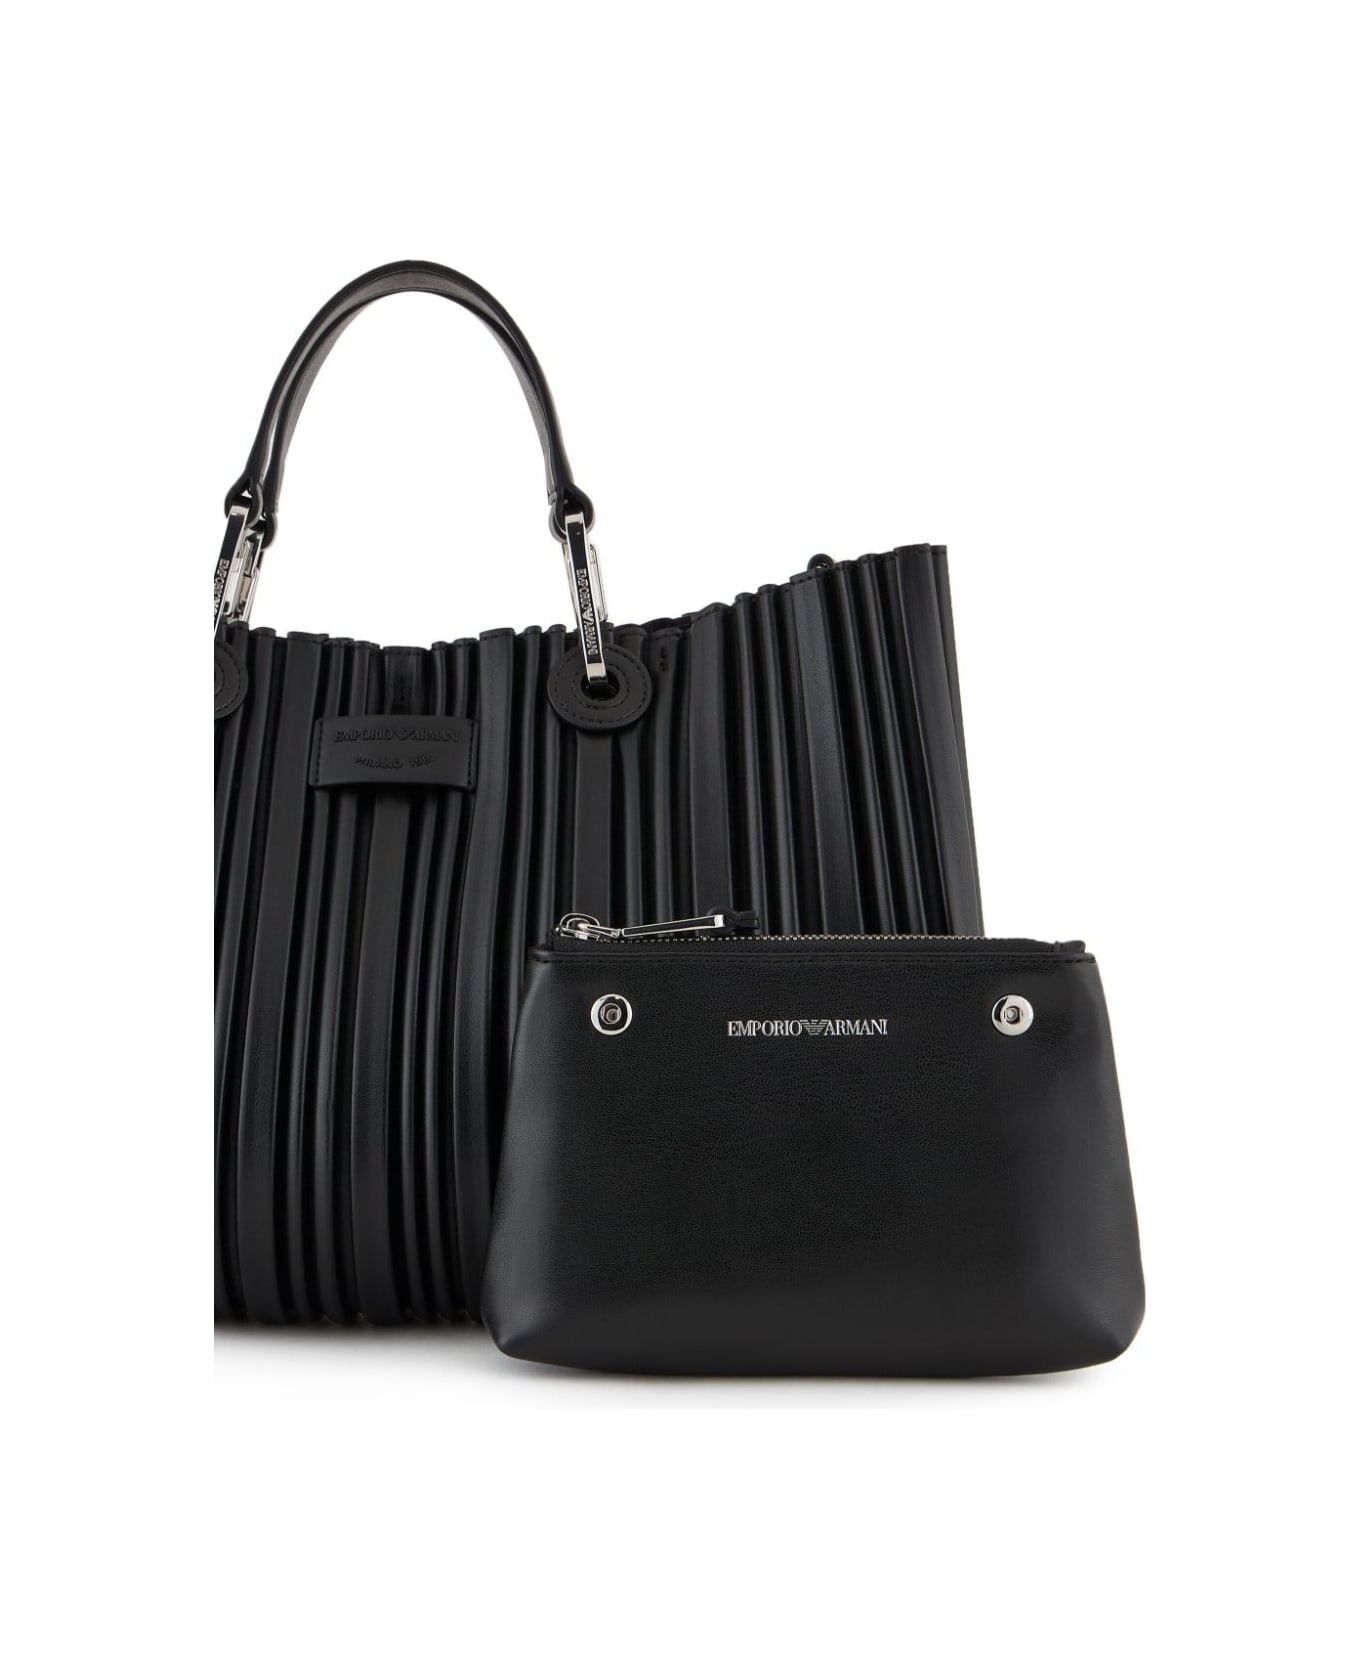 Emporio Armani Shopping Bag - Black